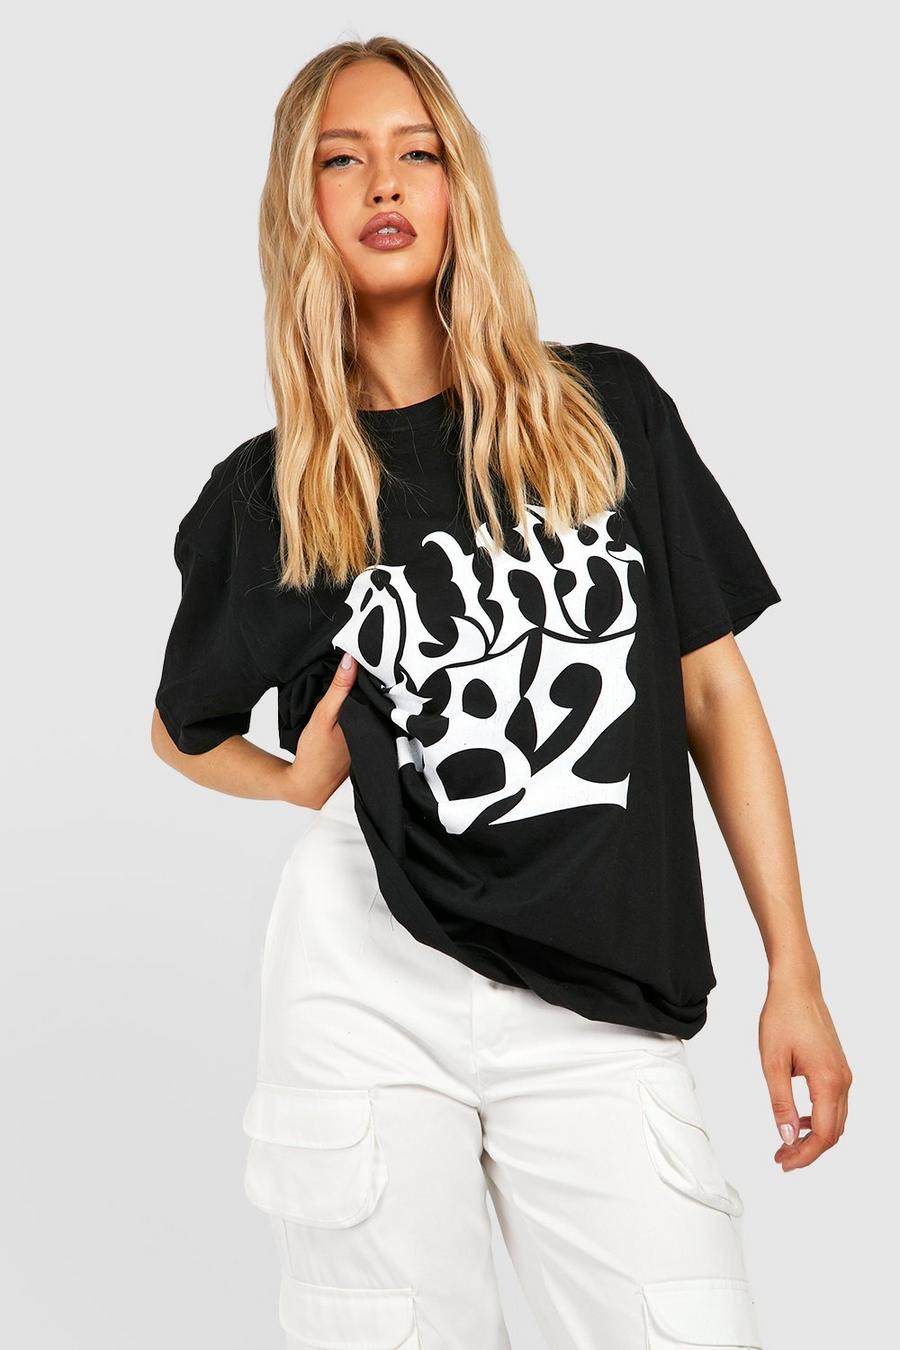 Black noir Tall Oversized Blink 182 License T-shirt